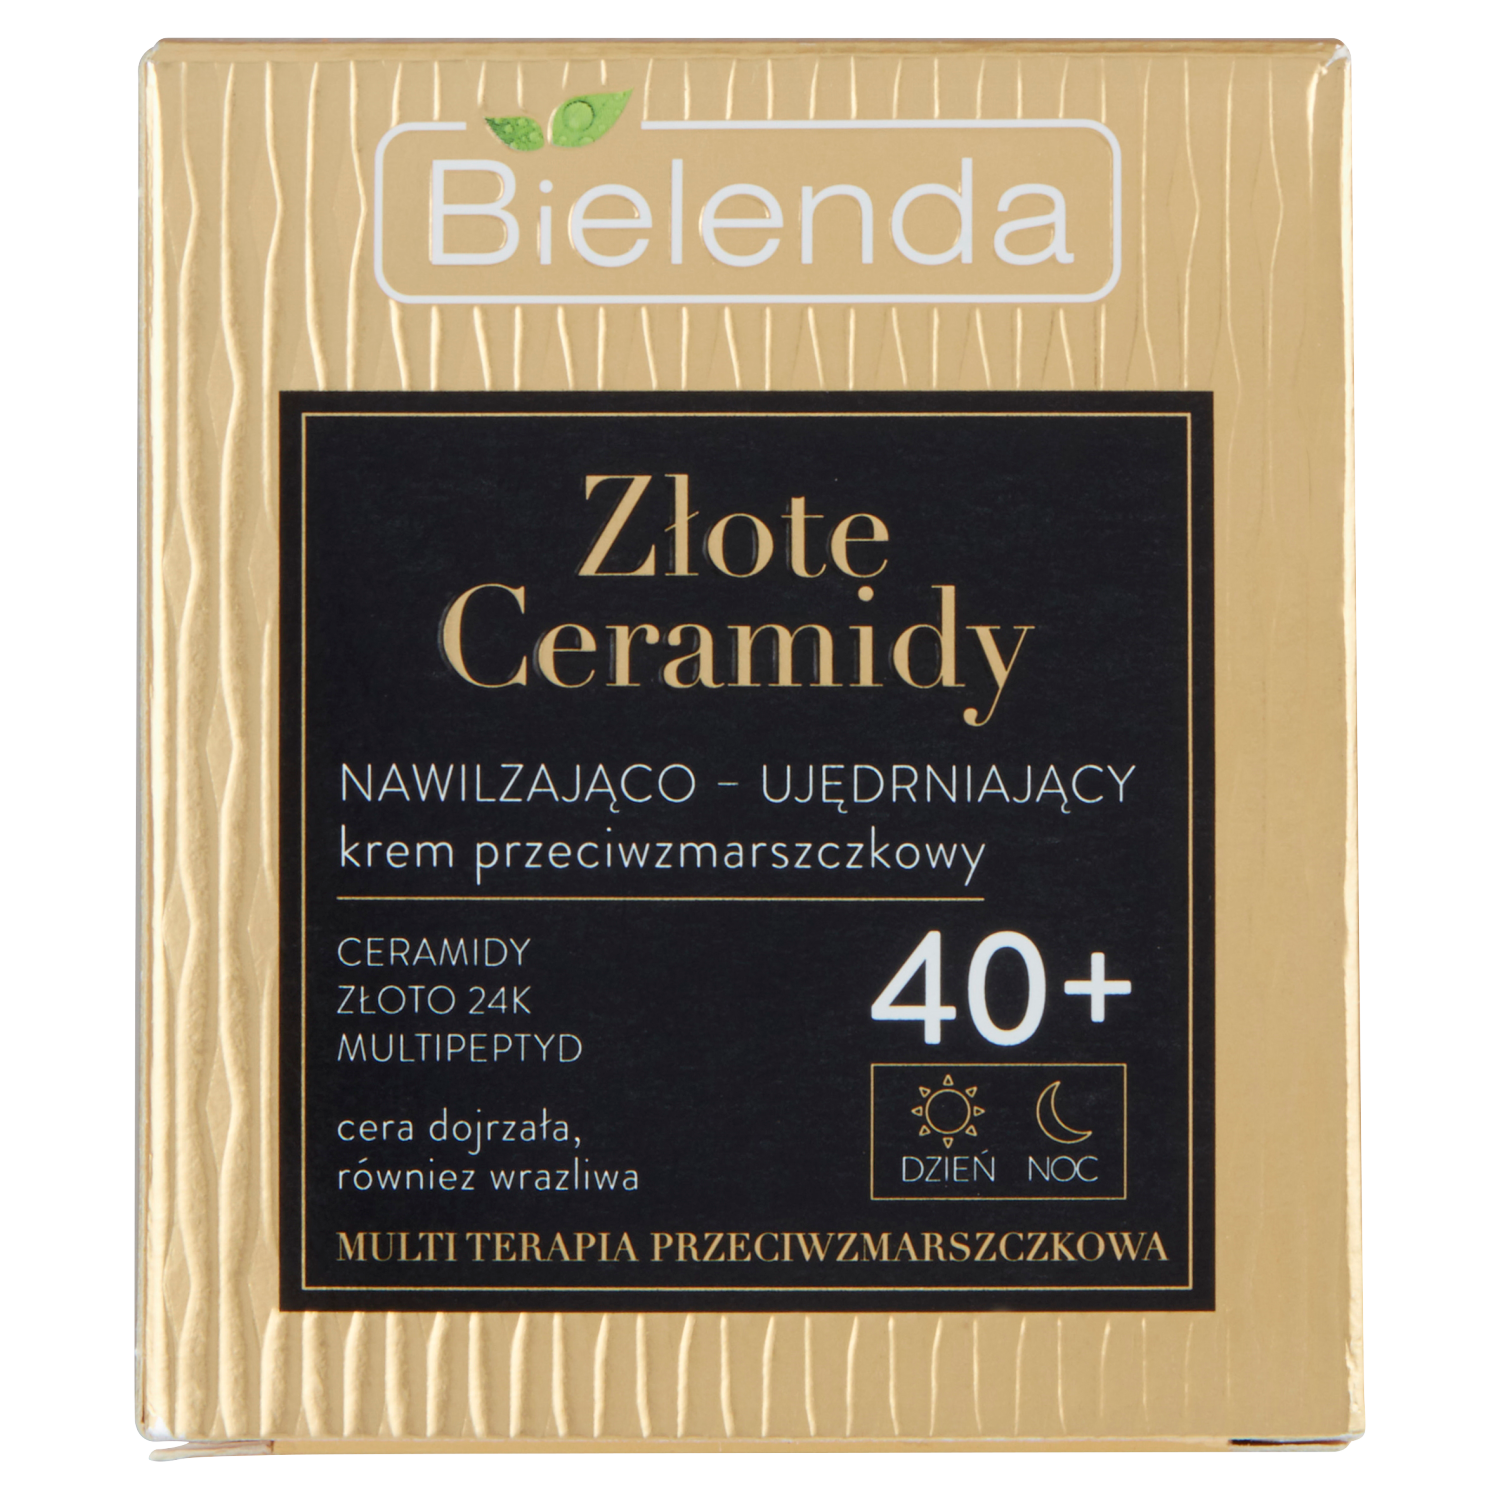 Bielenda Złote Ceramidy дневной и ночной крем для лица против морщин 40+, 50 мл